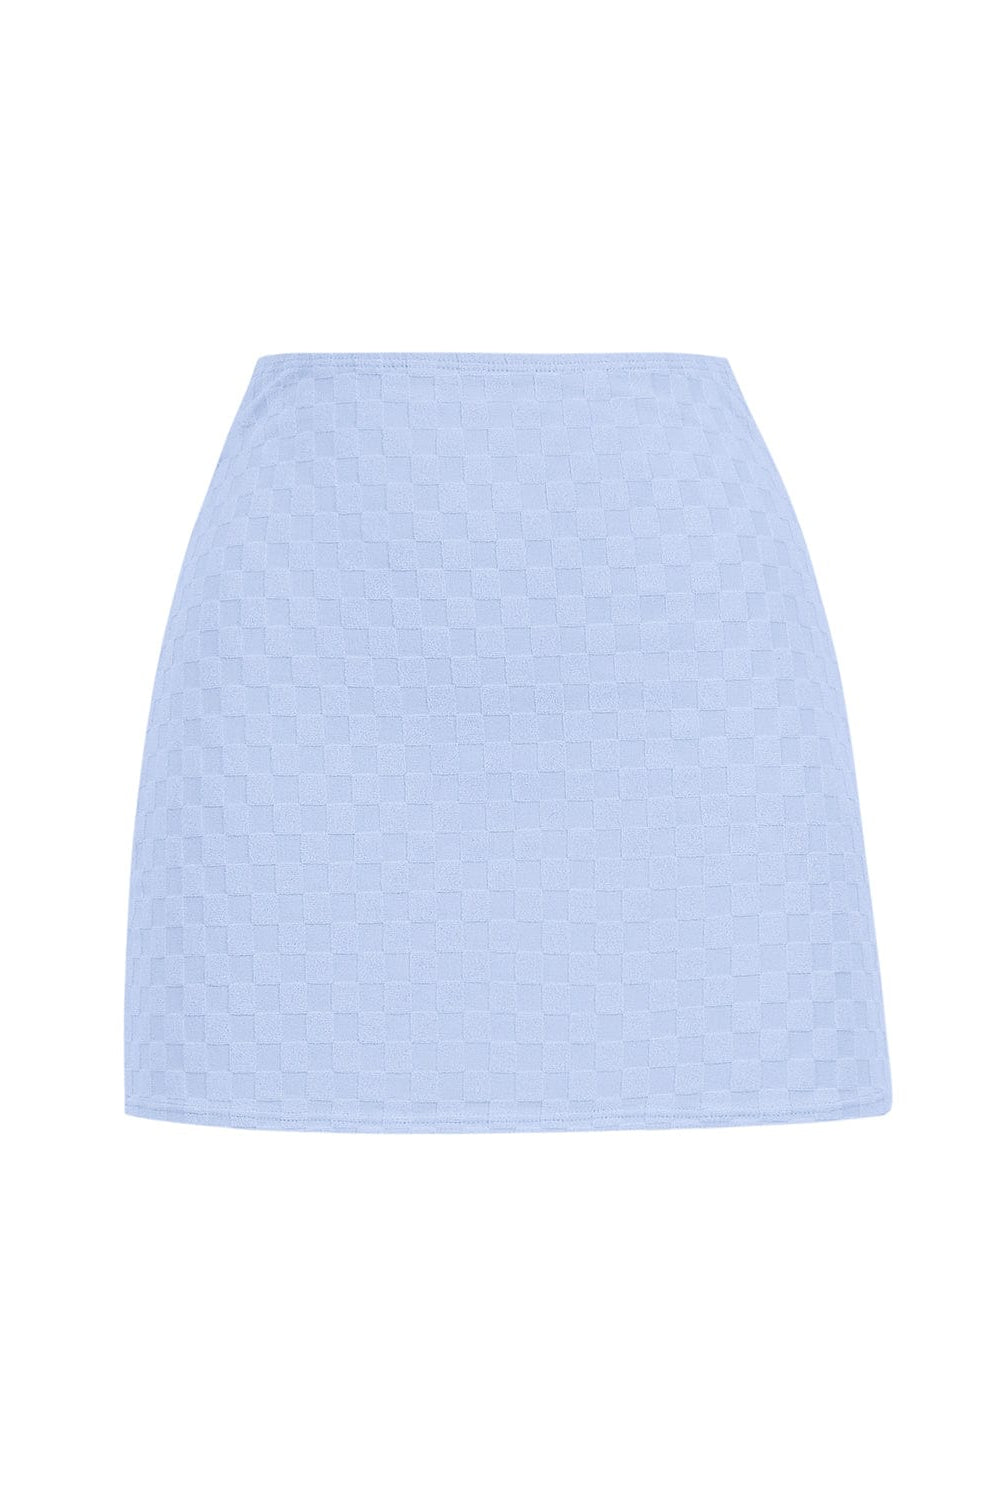 A blue mini skirt against a white wall. 